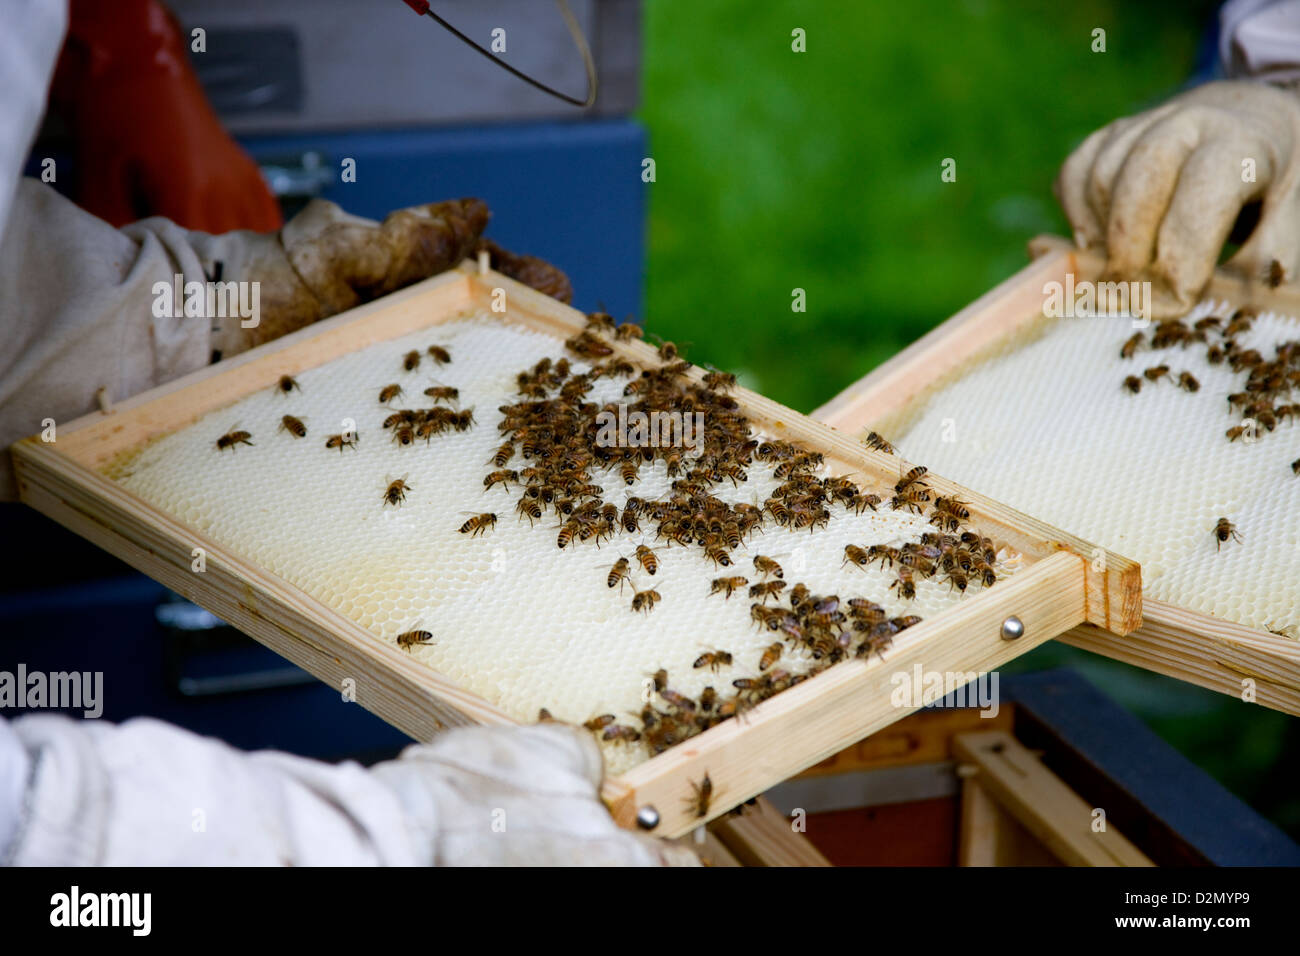 Images supprimées de ruches à abeilles, Apis mellifera. Banque D'Images